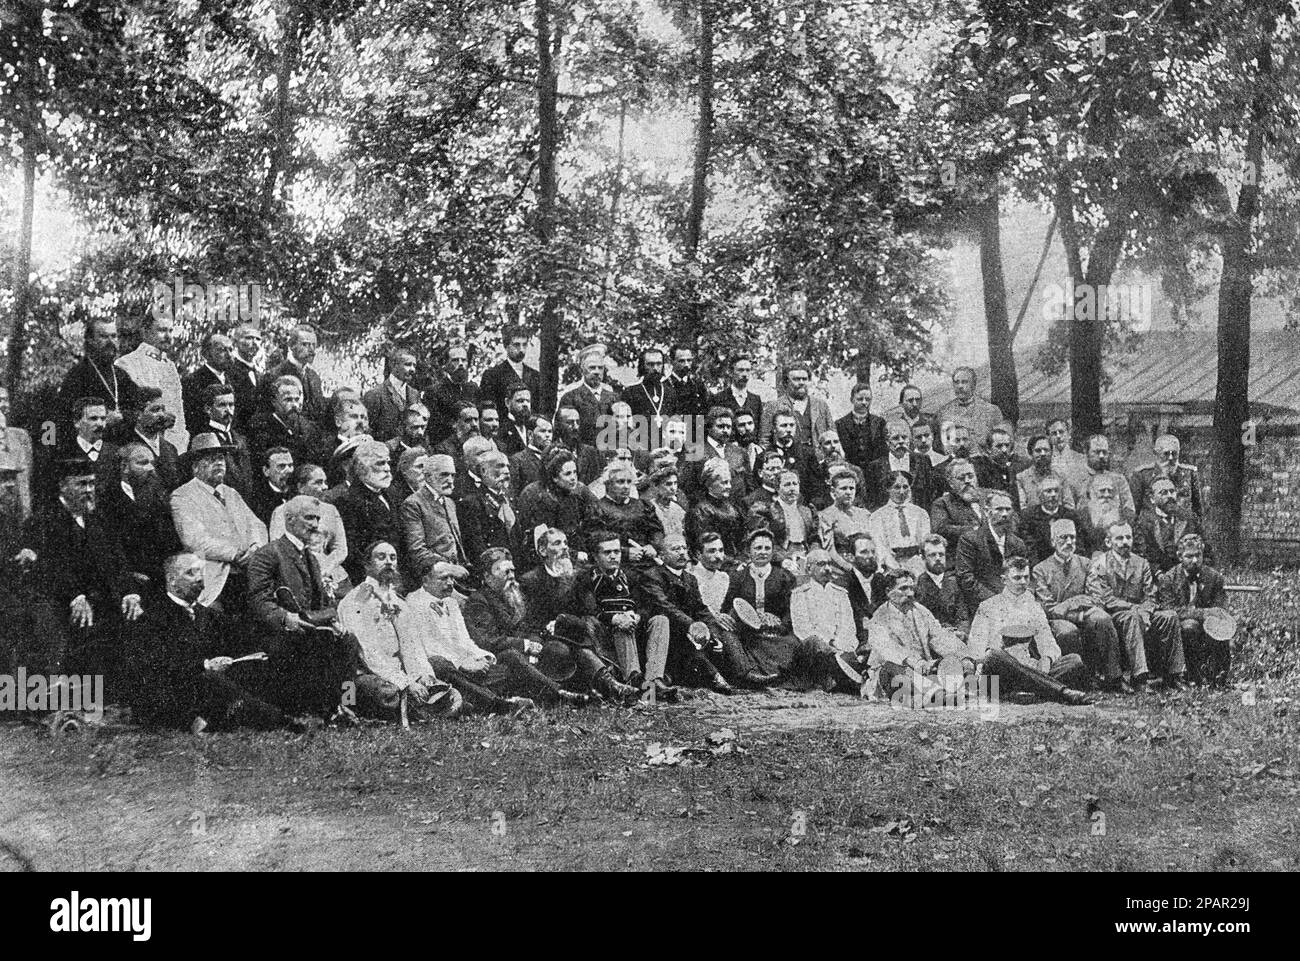 Participantes del Tercer Congreso Regional Histórico y Arqueológico en Vladimir en 1906. Foto de 1906. Foto de stock